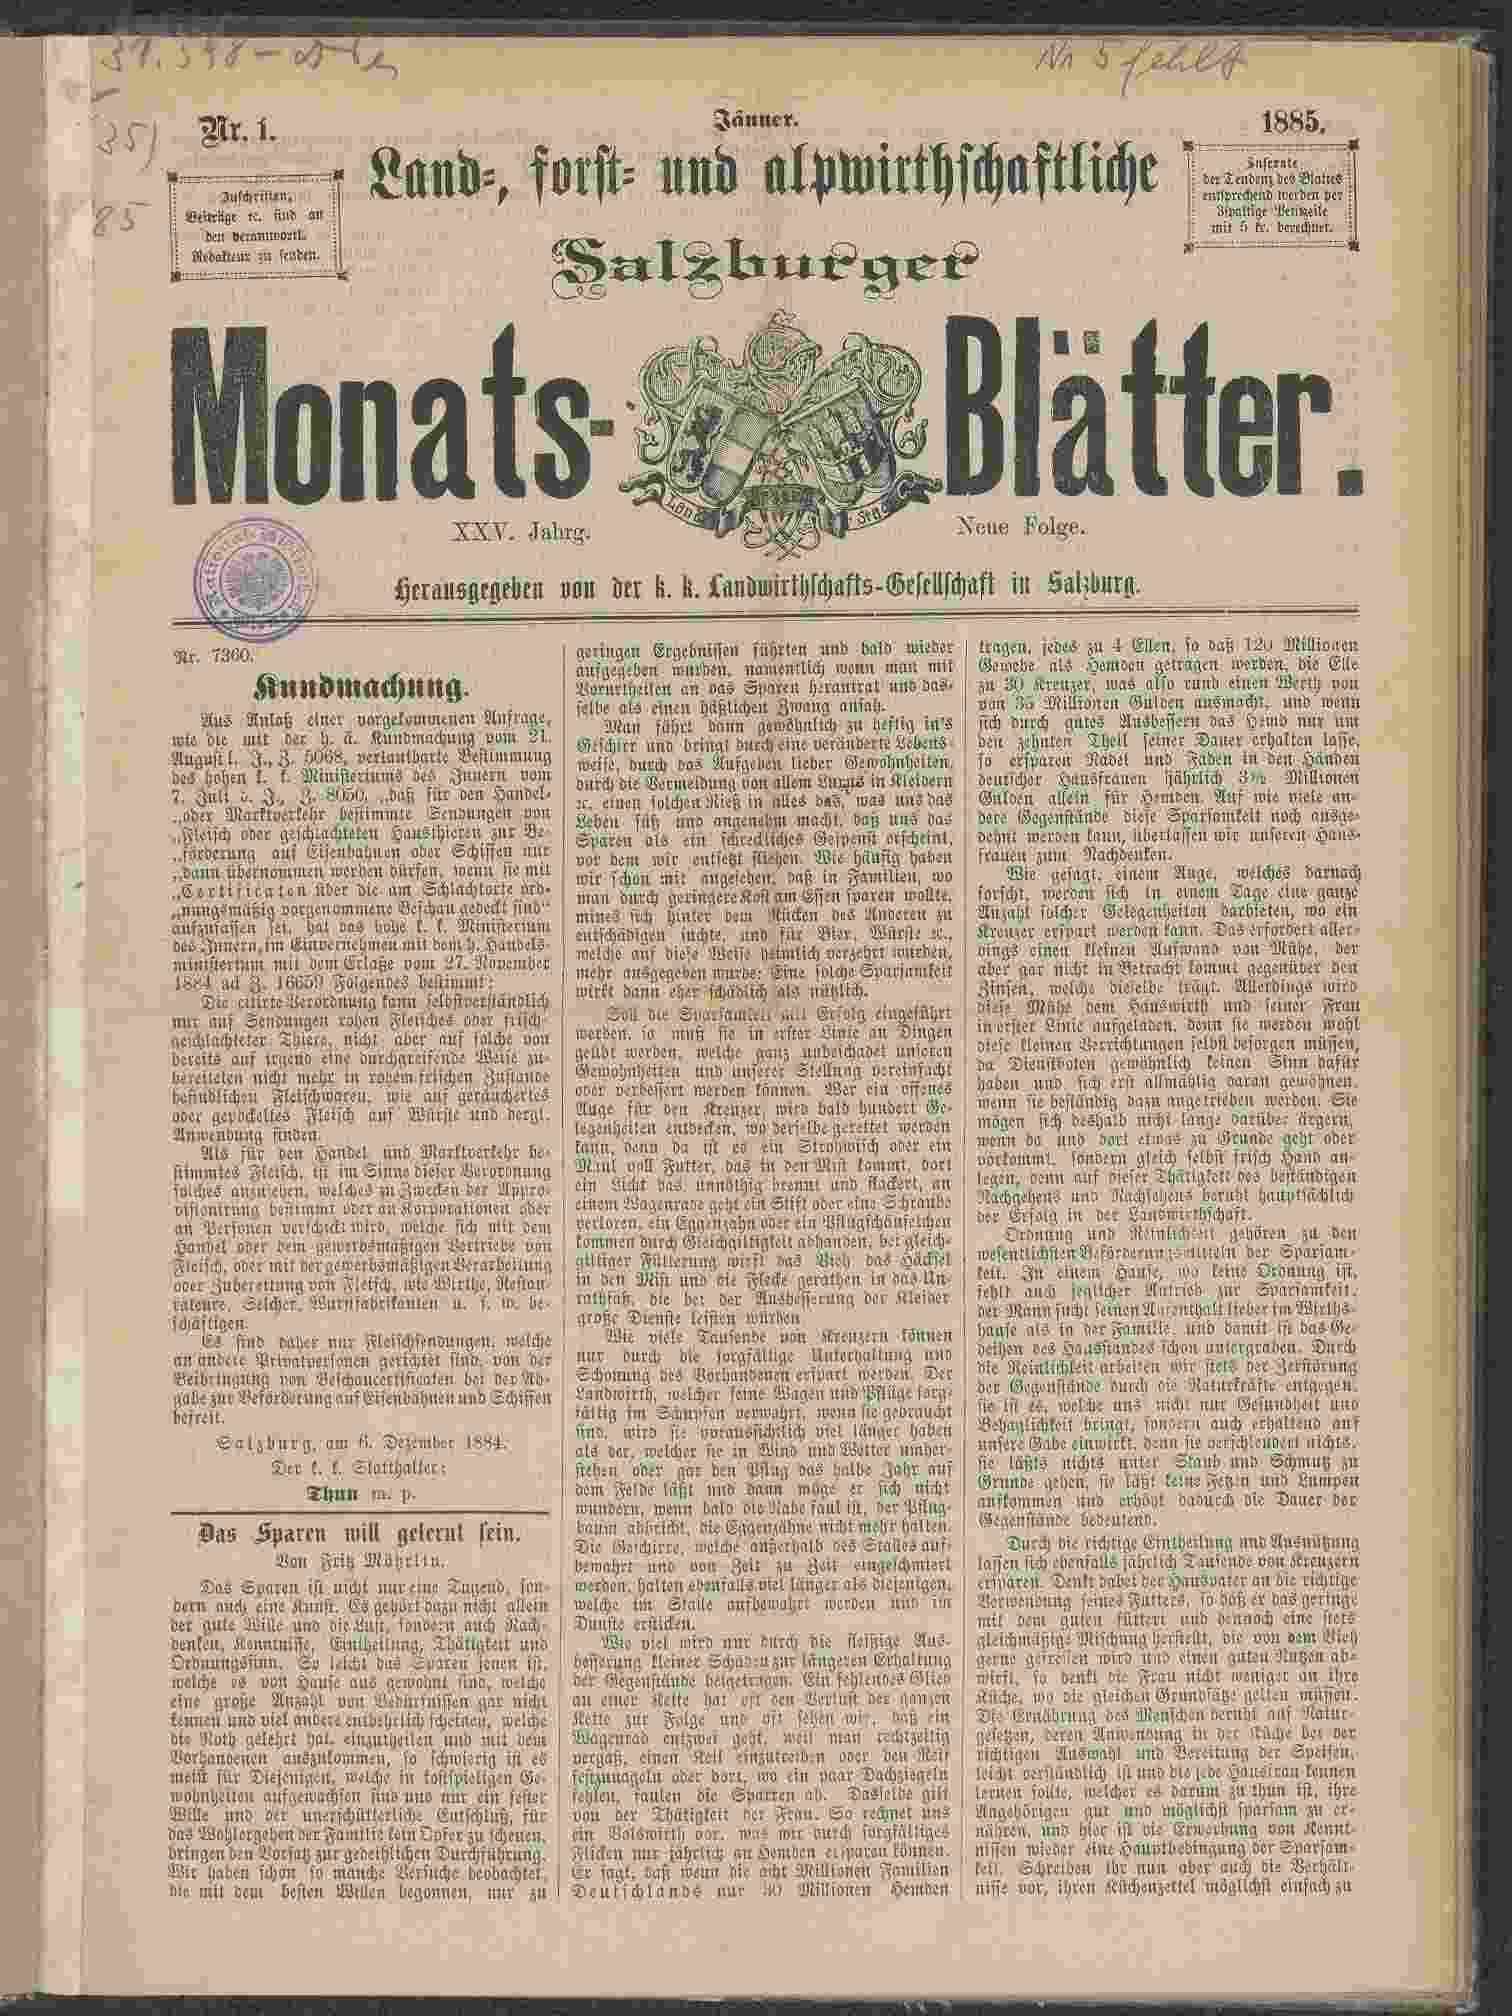 Wochen-Blatt des k.k. landwirthschaftlichen Vereines in Salzburg, Nr. 1, 1885, S. 1, ANNO/ÖNB 